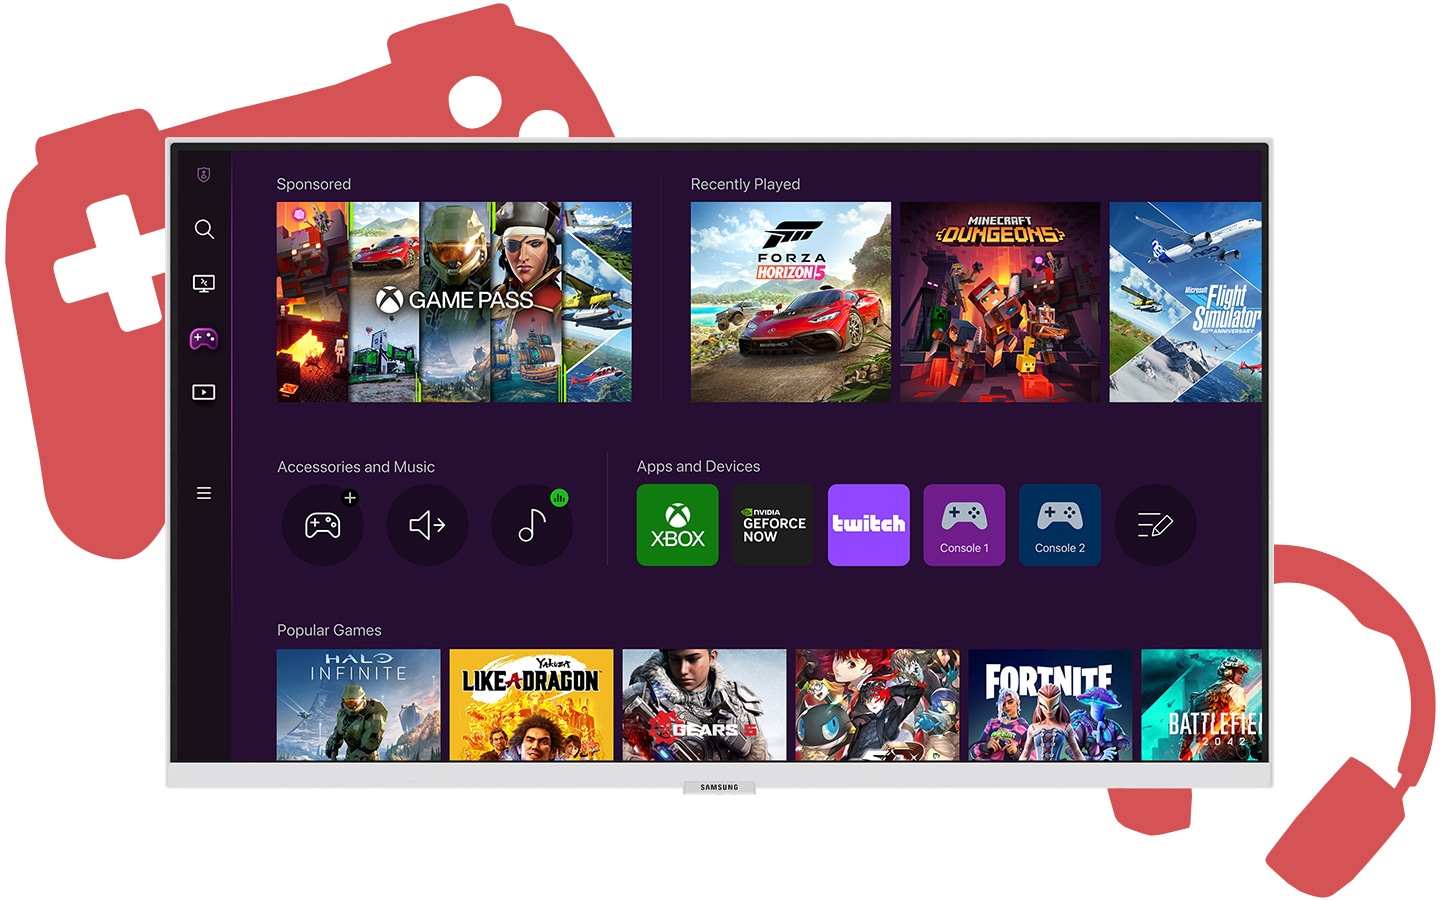 Ein Bildschirm zeigt den Startbildschirm des Gaming-Hubs mit mehreren Spielen und Apps, die zum Herunterladen zur Verfügung stehen.